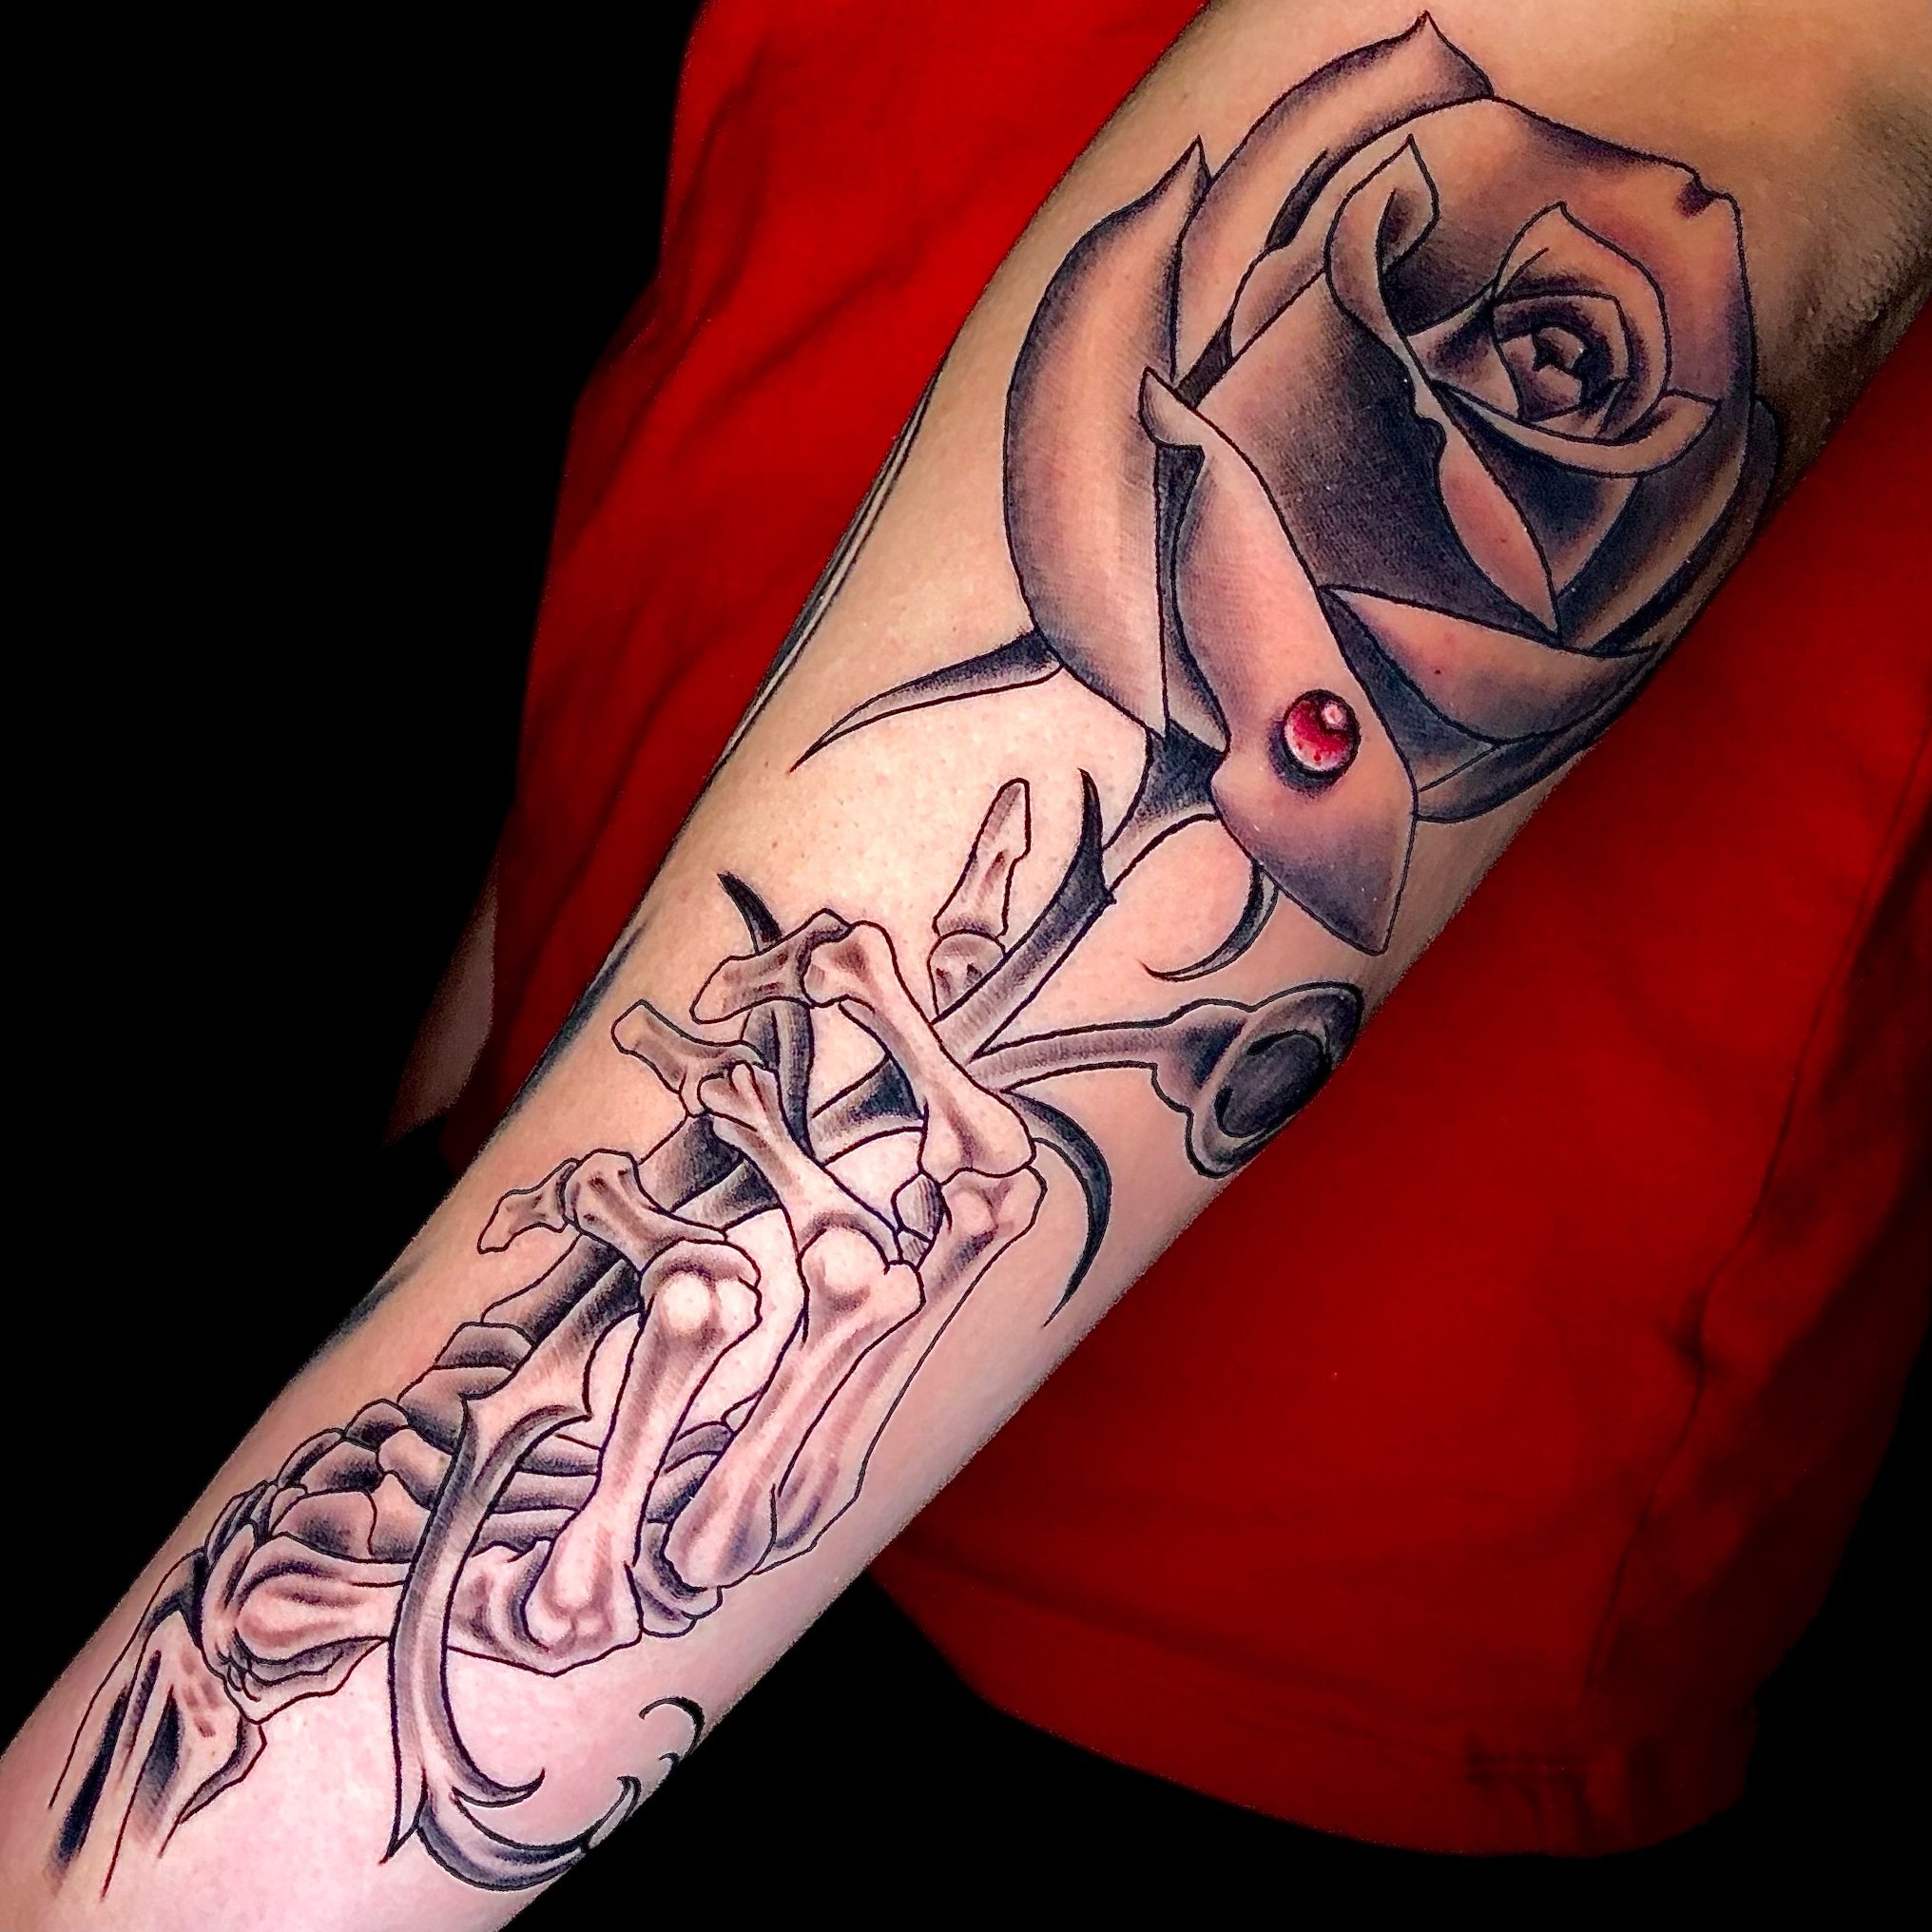 skeleton hand holding rose